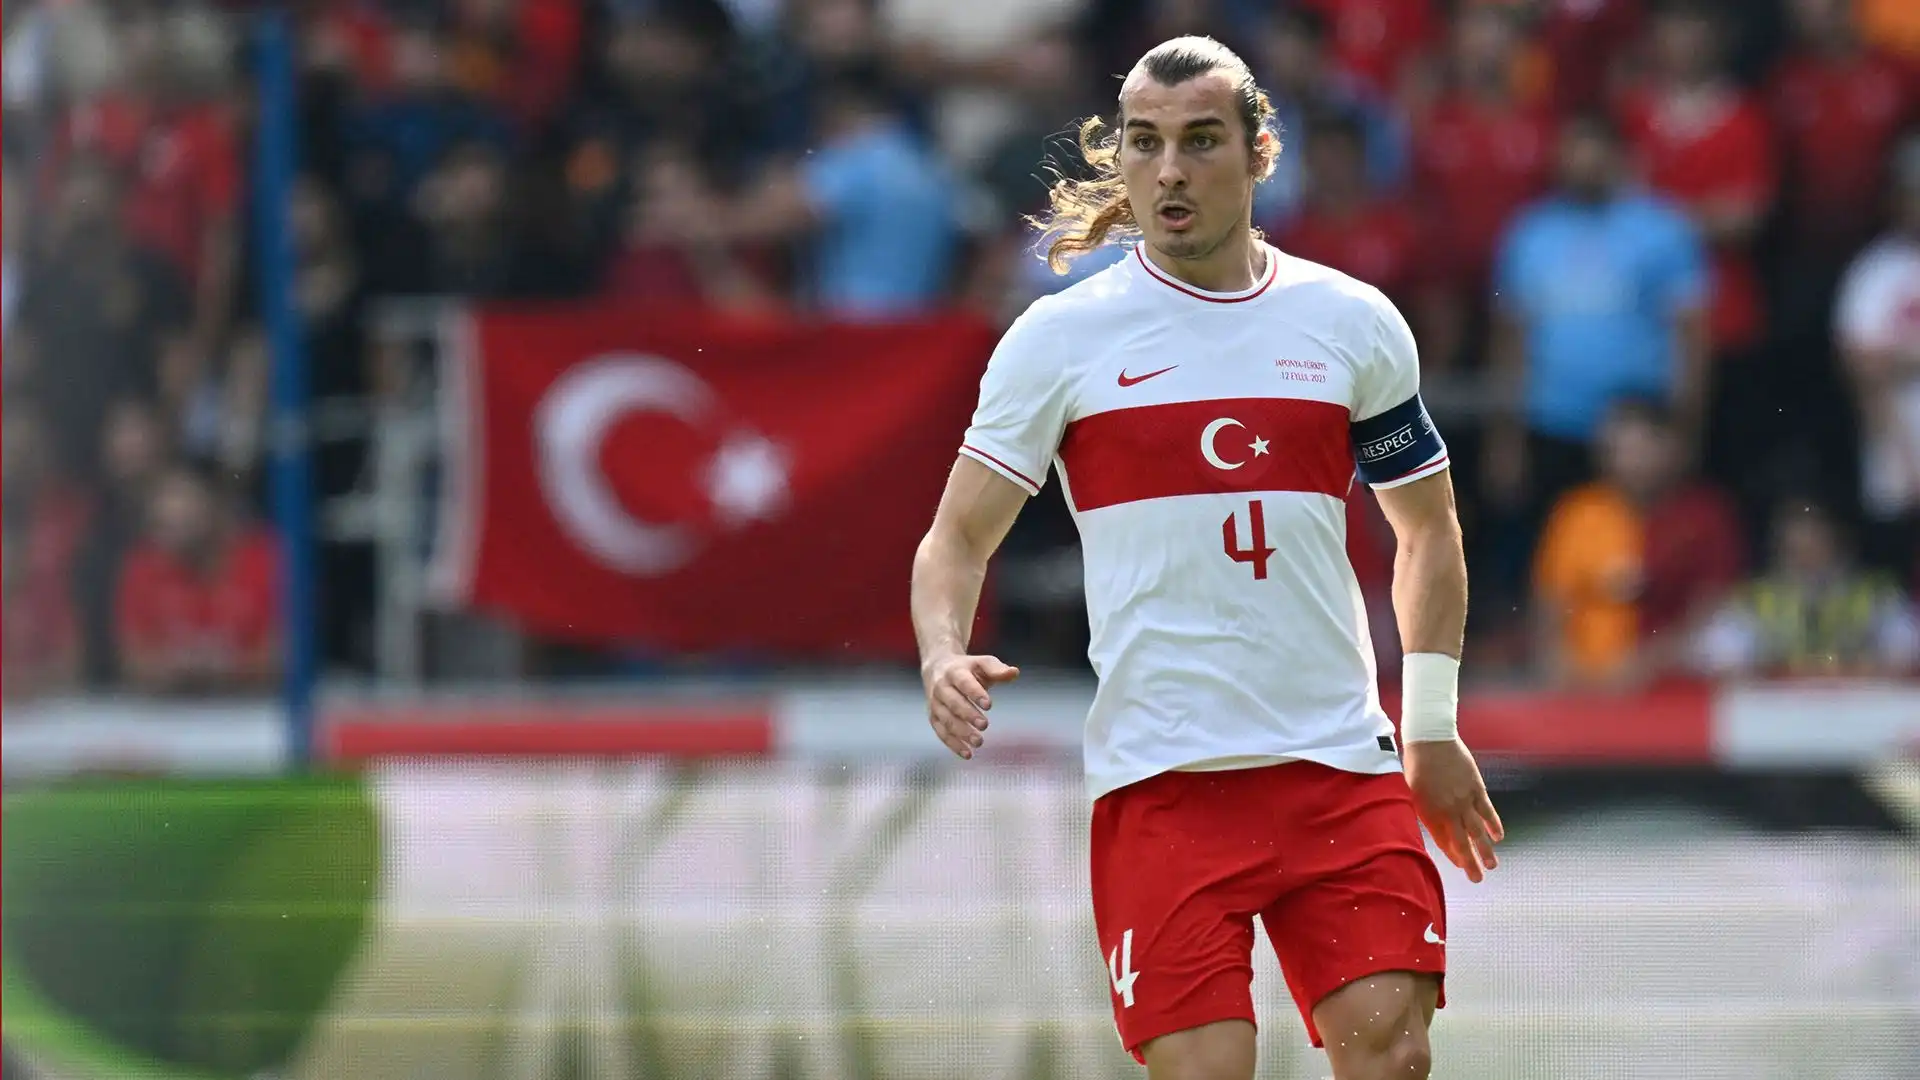 Caglar Soyuncu (Difensore, Turchia): 5 milioni di euro all'anno